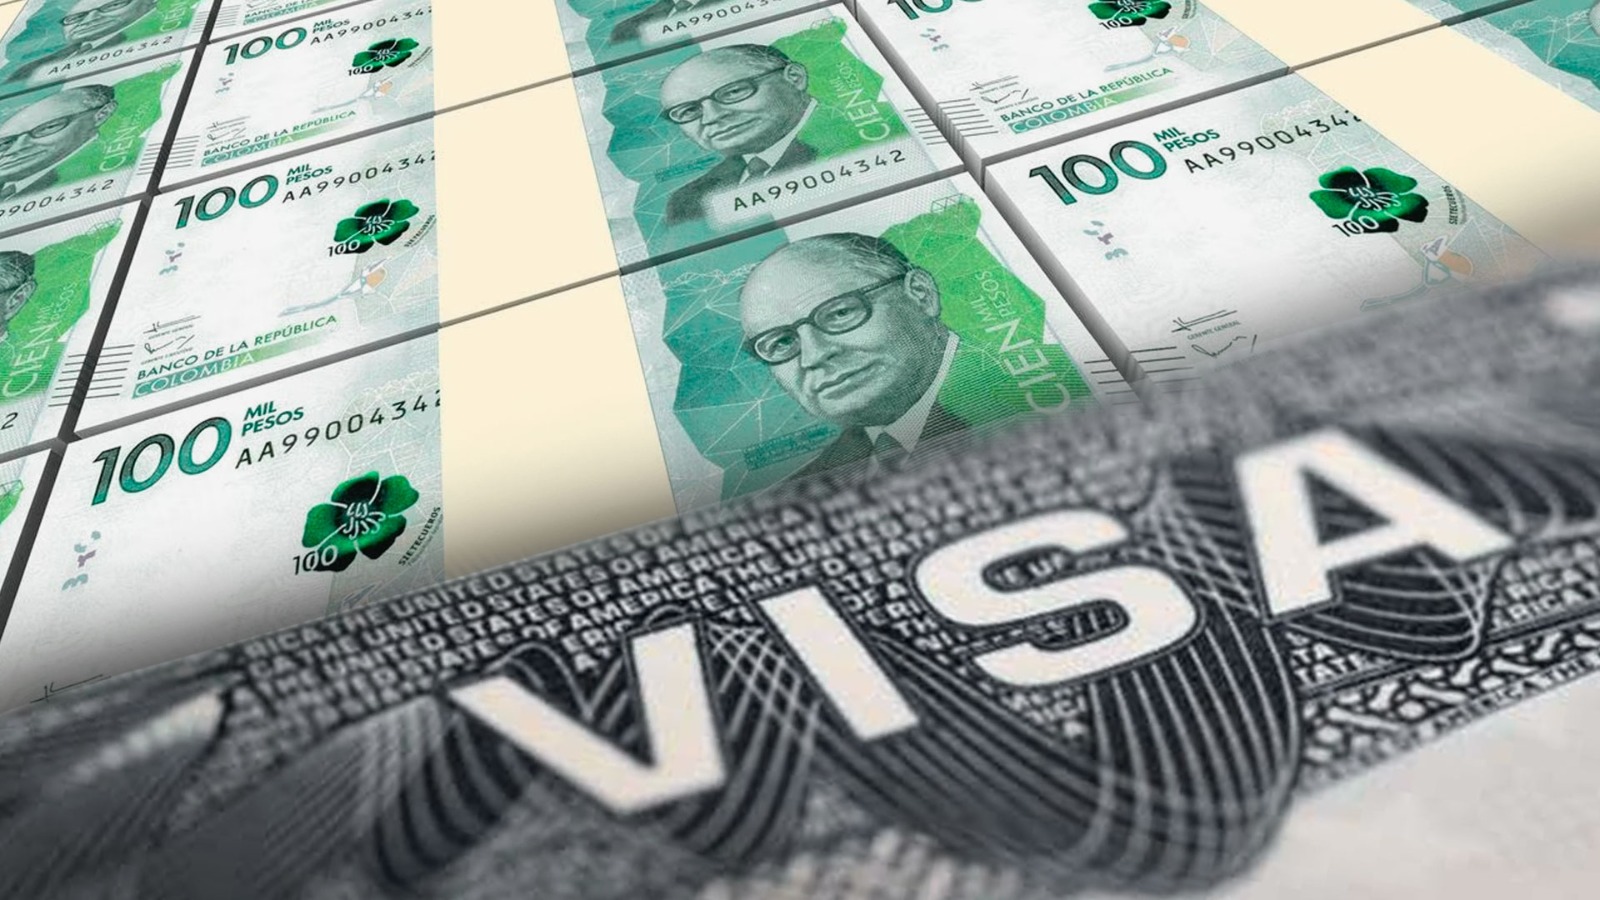 Es importante contar con solvencia económica para solicitar la visa a los Estados Unidos. Cortesía: Infobae.